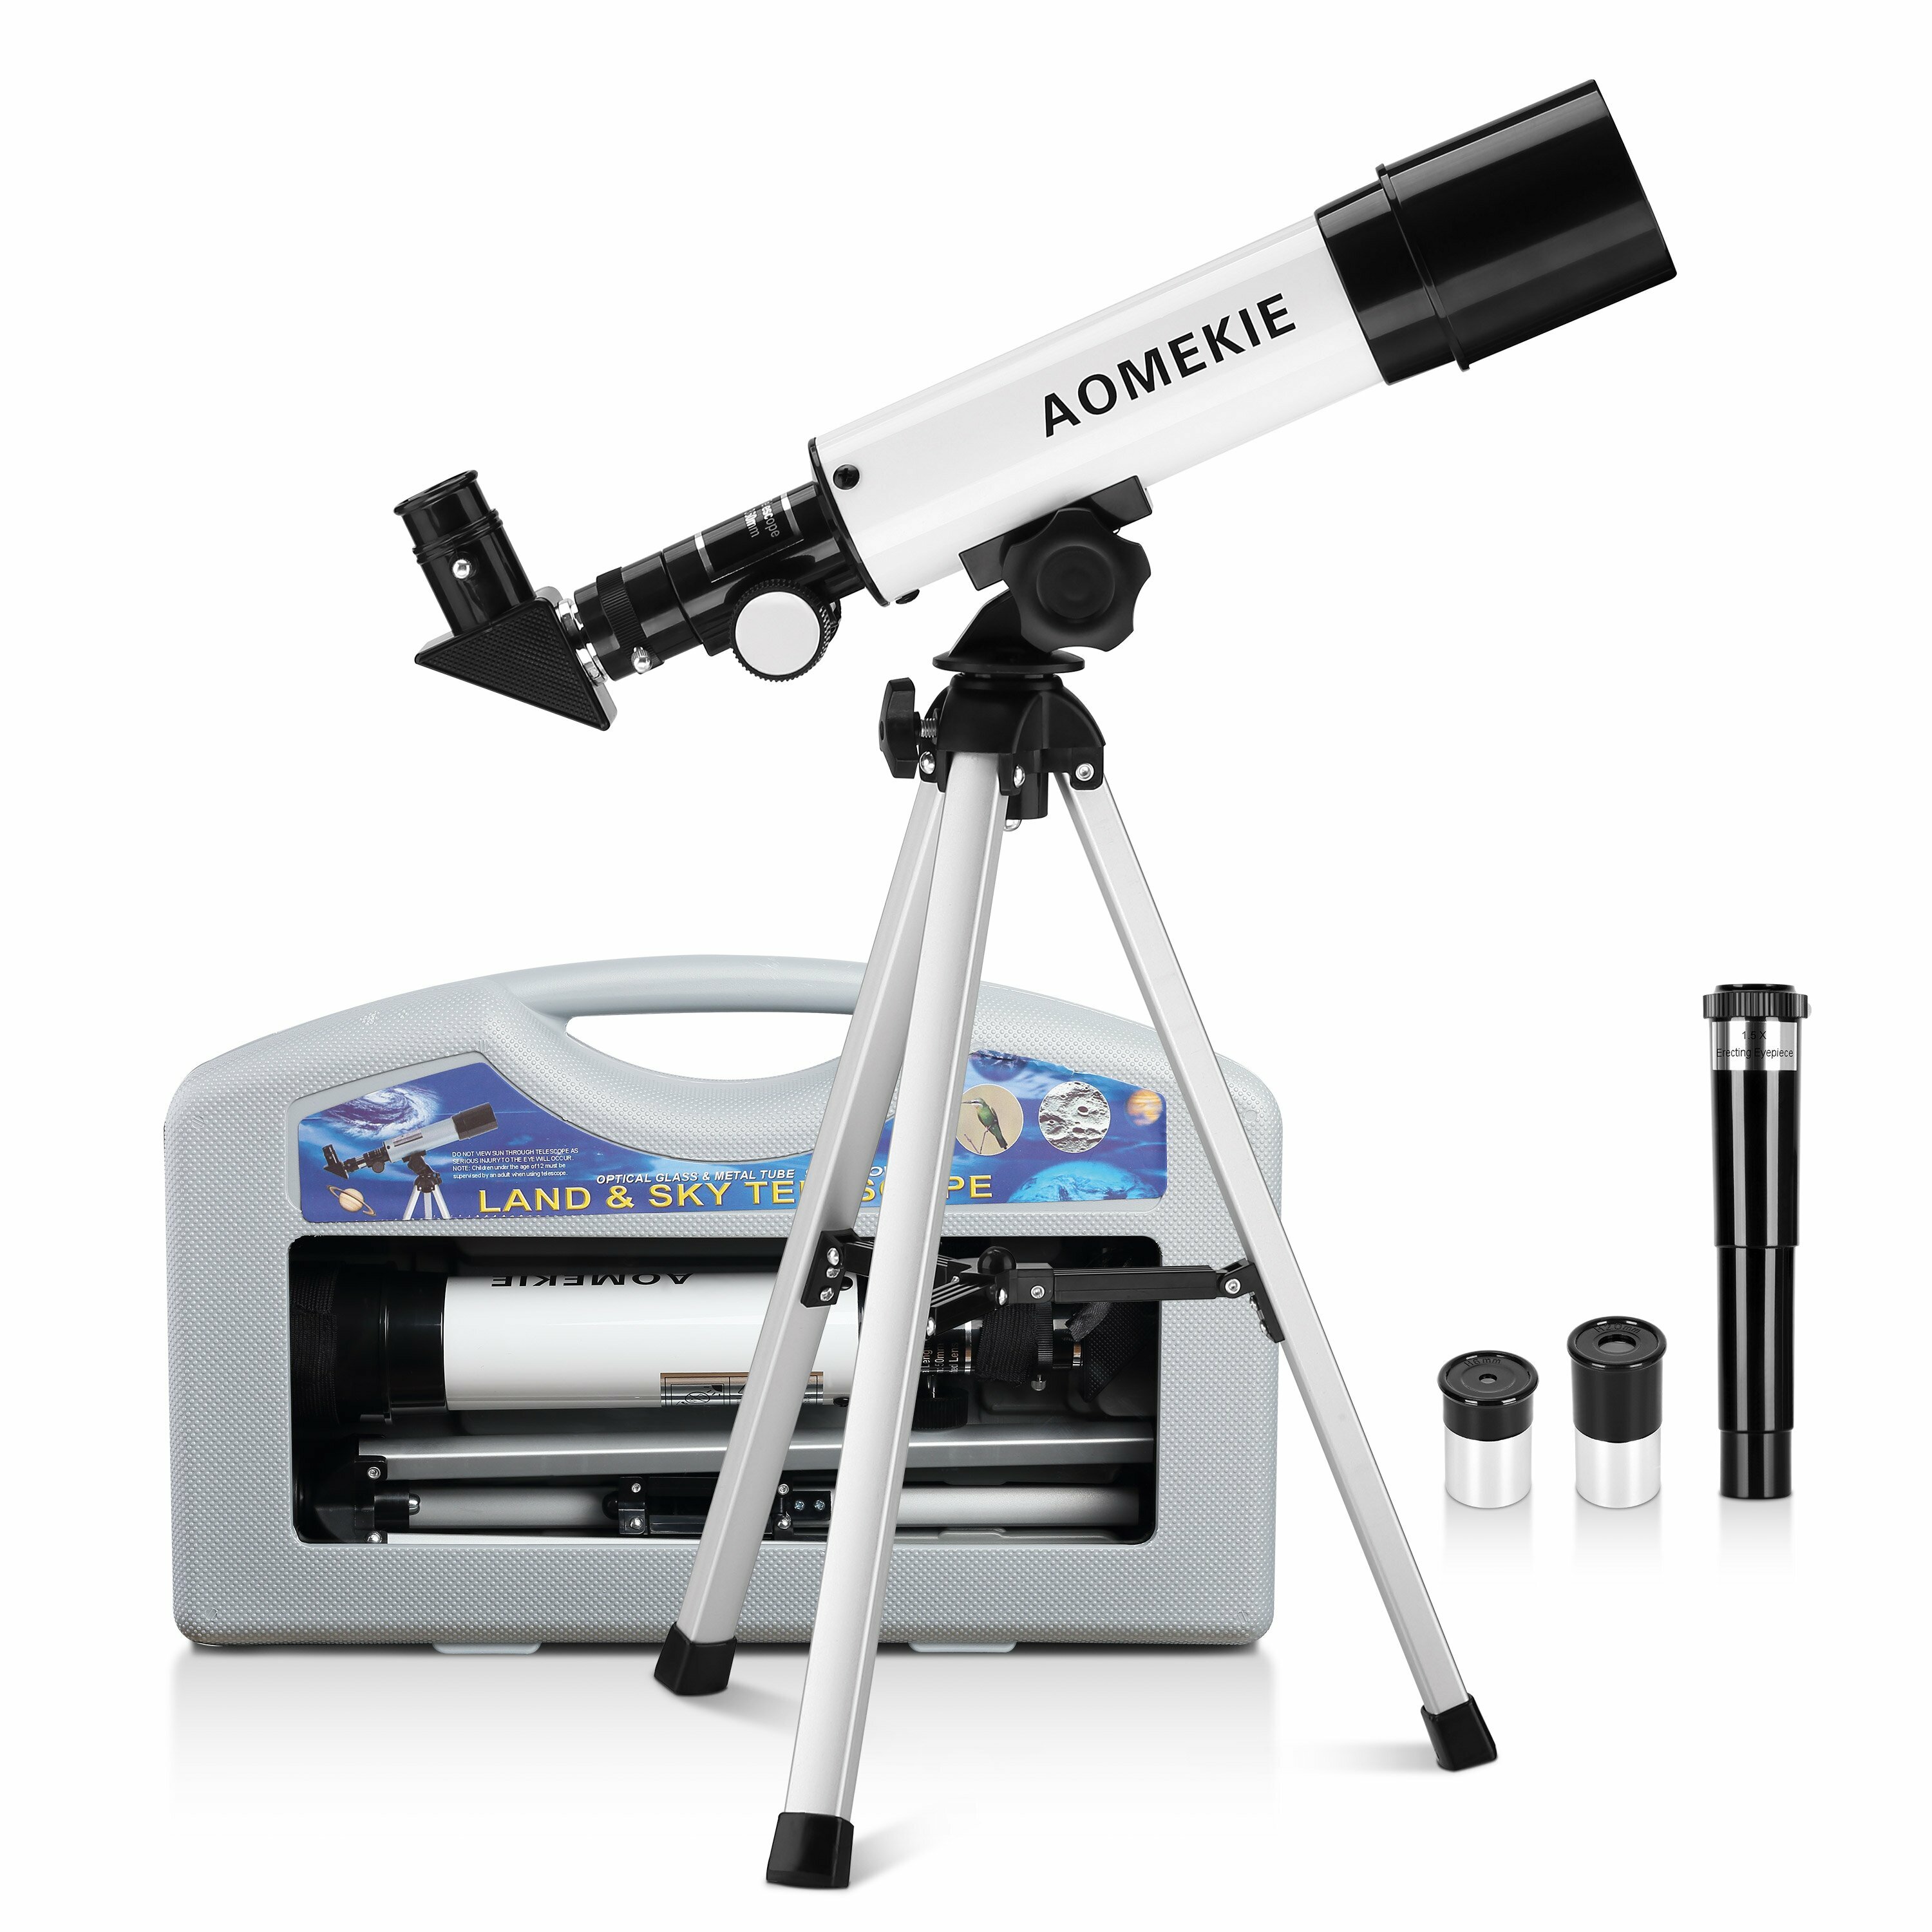 初心者用のAOMEKIE天体望遠鏡50/360mm、キャリングケース、三脚、直立接眼レンズ付き